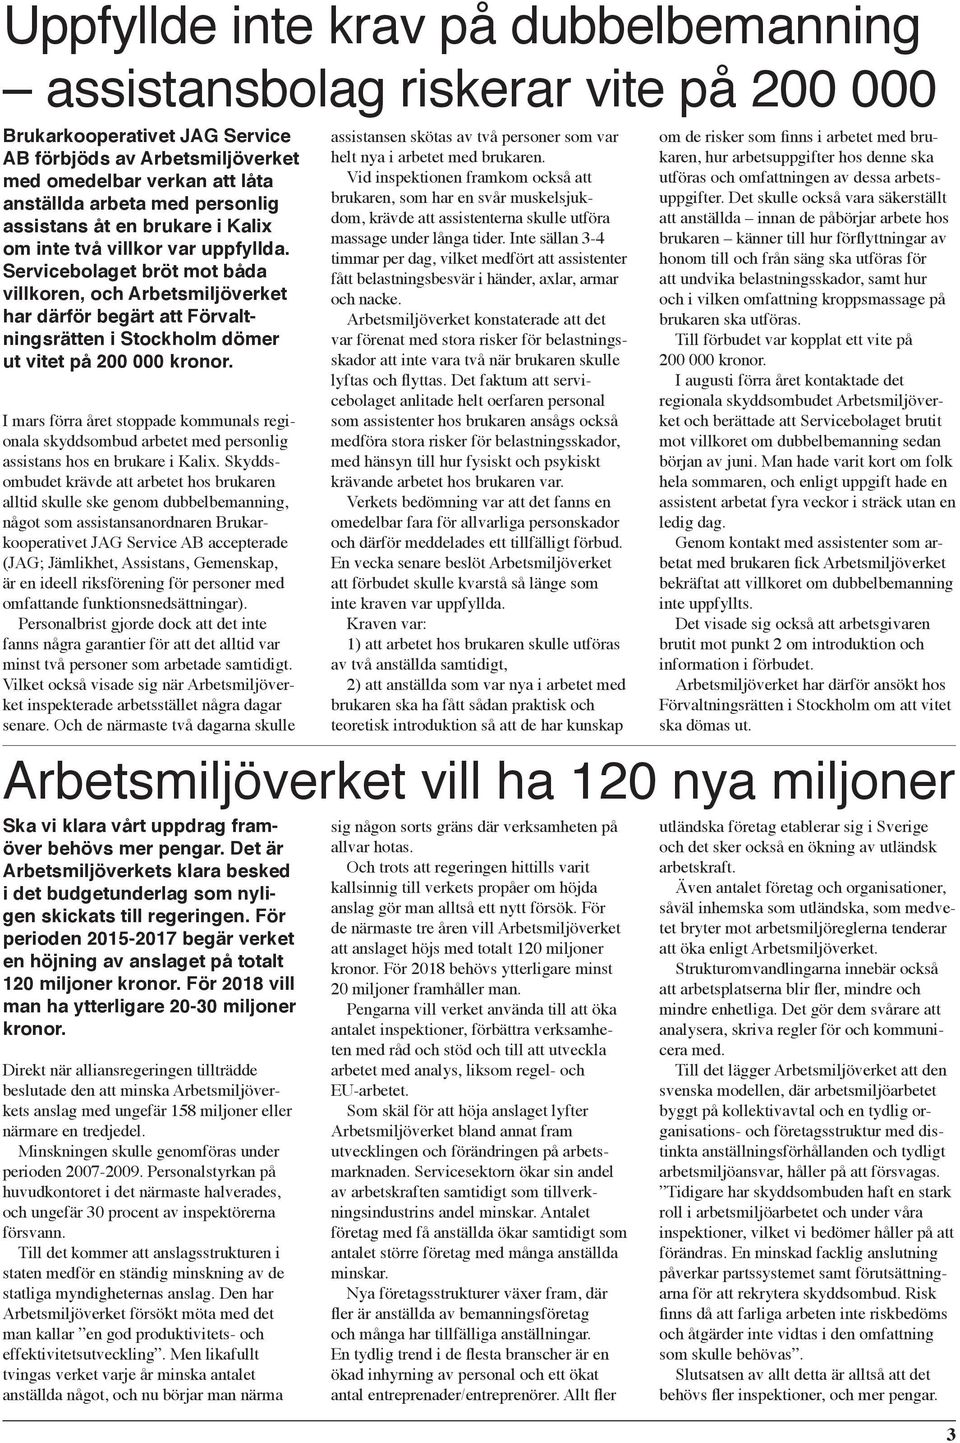 Servicebolaget bröt mot båda villkoren, och Arbetsmiljöverket har därför begärt att Förvaltningsrätten i Stockholm dömer ut vitet på 200 000 kronor.